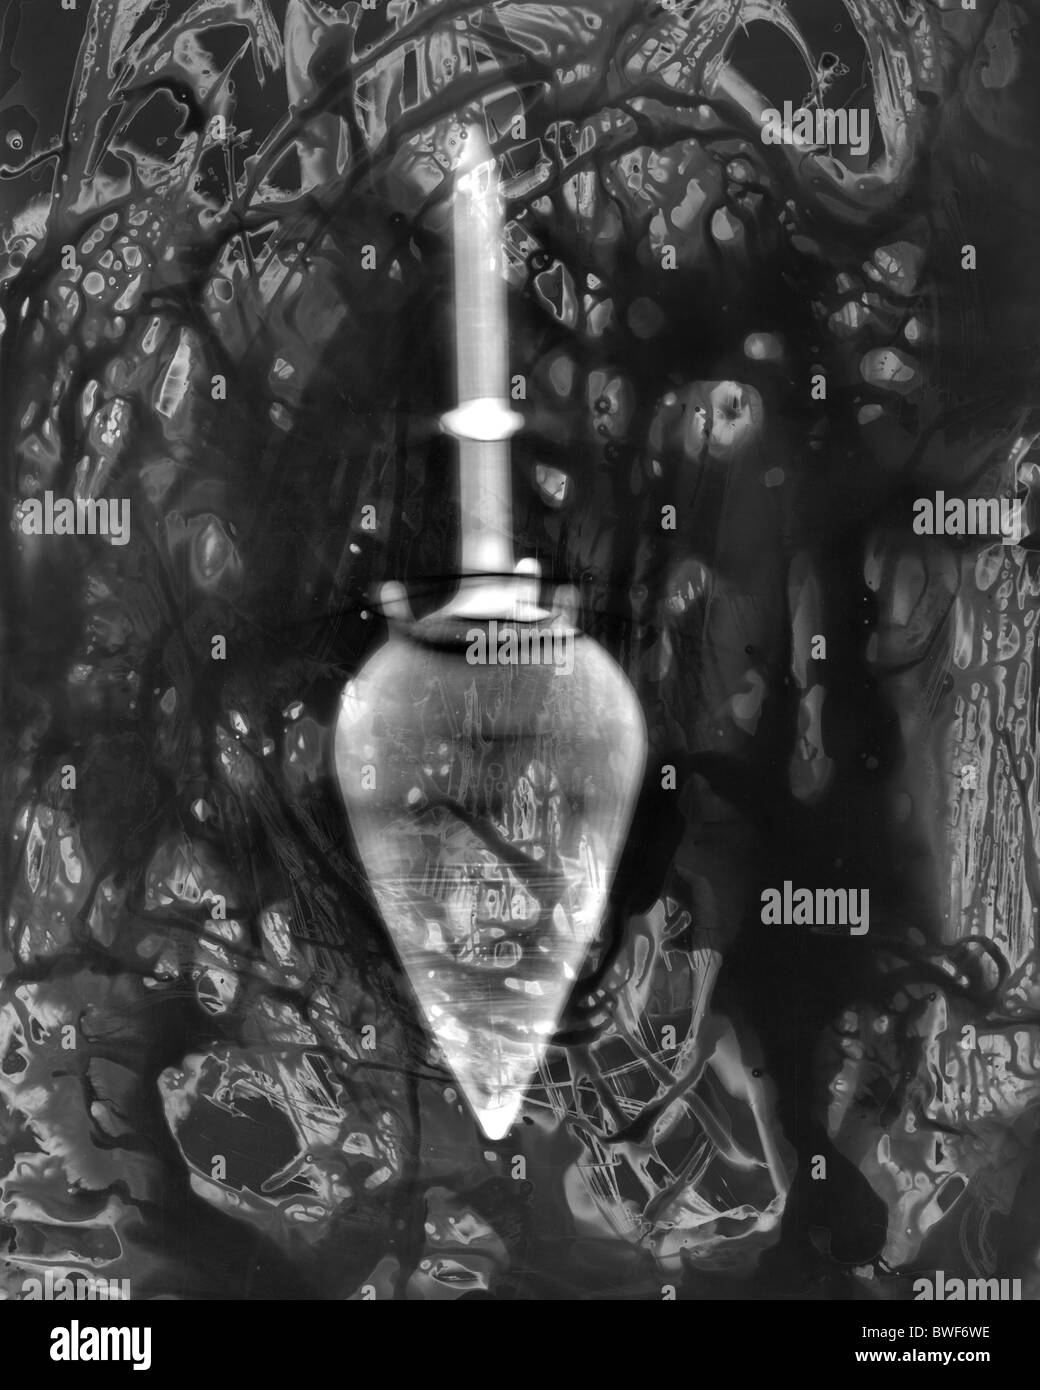 traditionellen Dunkelkammer-Praxis und Fotogramm Produktion mit chemischen Verarbeitung Fotopapier ShadowCatchers Stockfoto